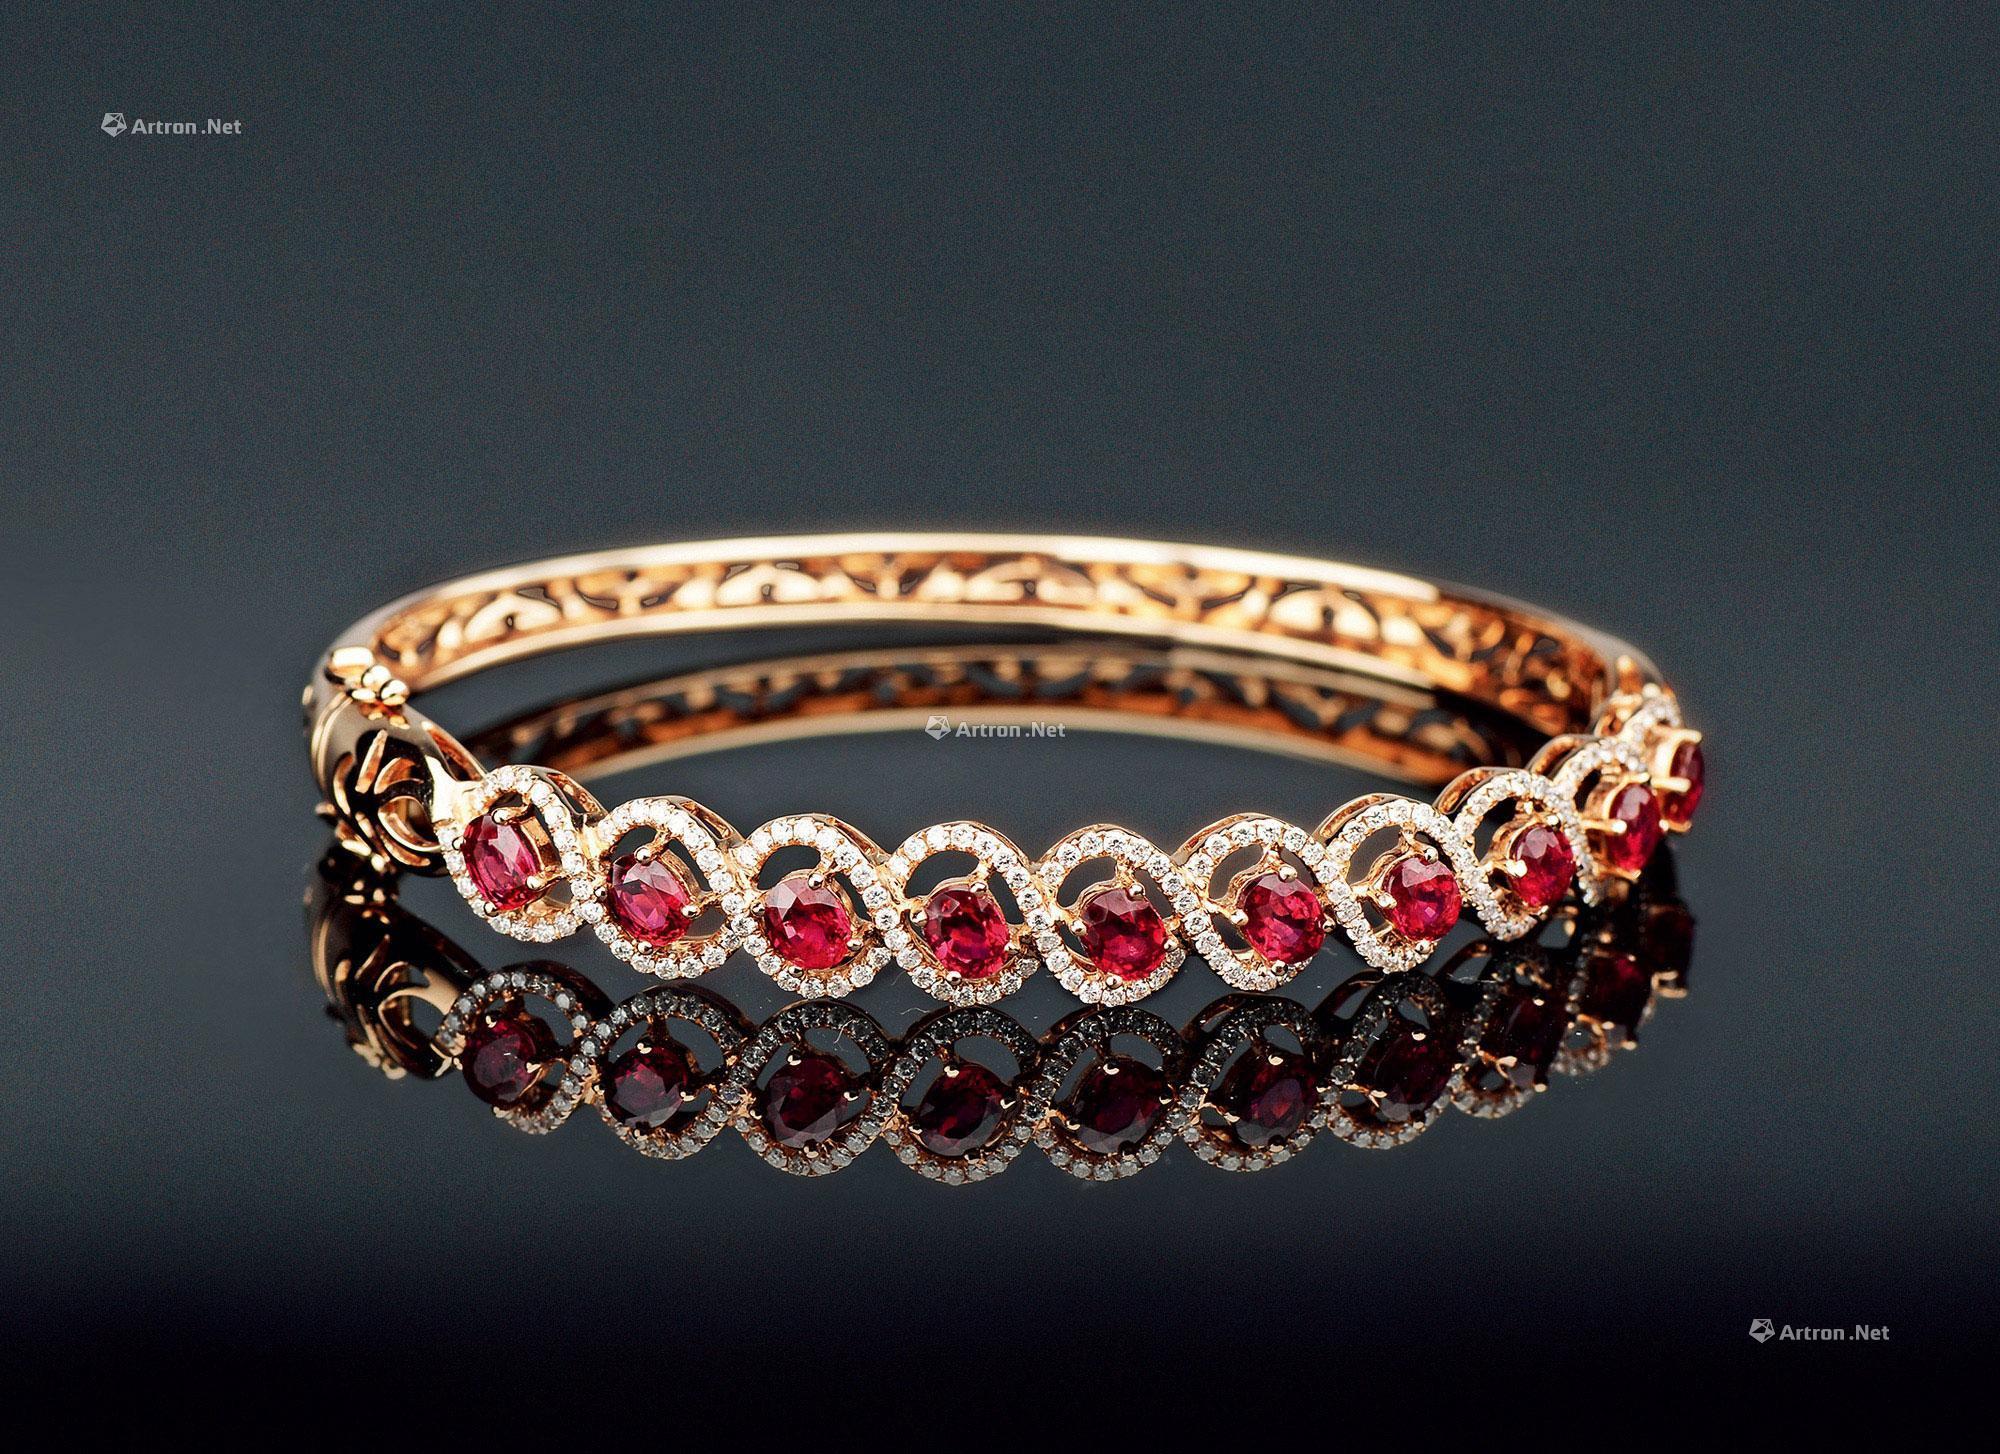 高清图|蒂芙尼铂金镶嵌钻石手链手镯图片1|腕表之家-珠宝